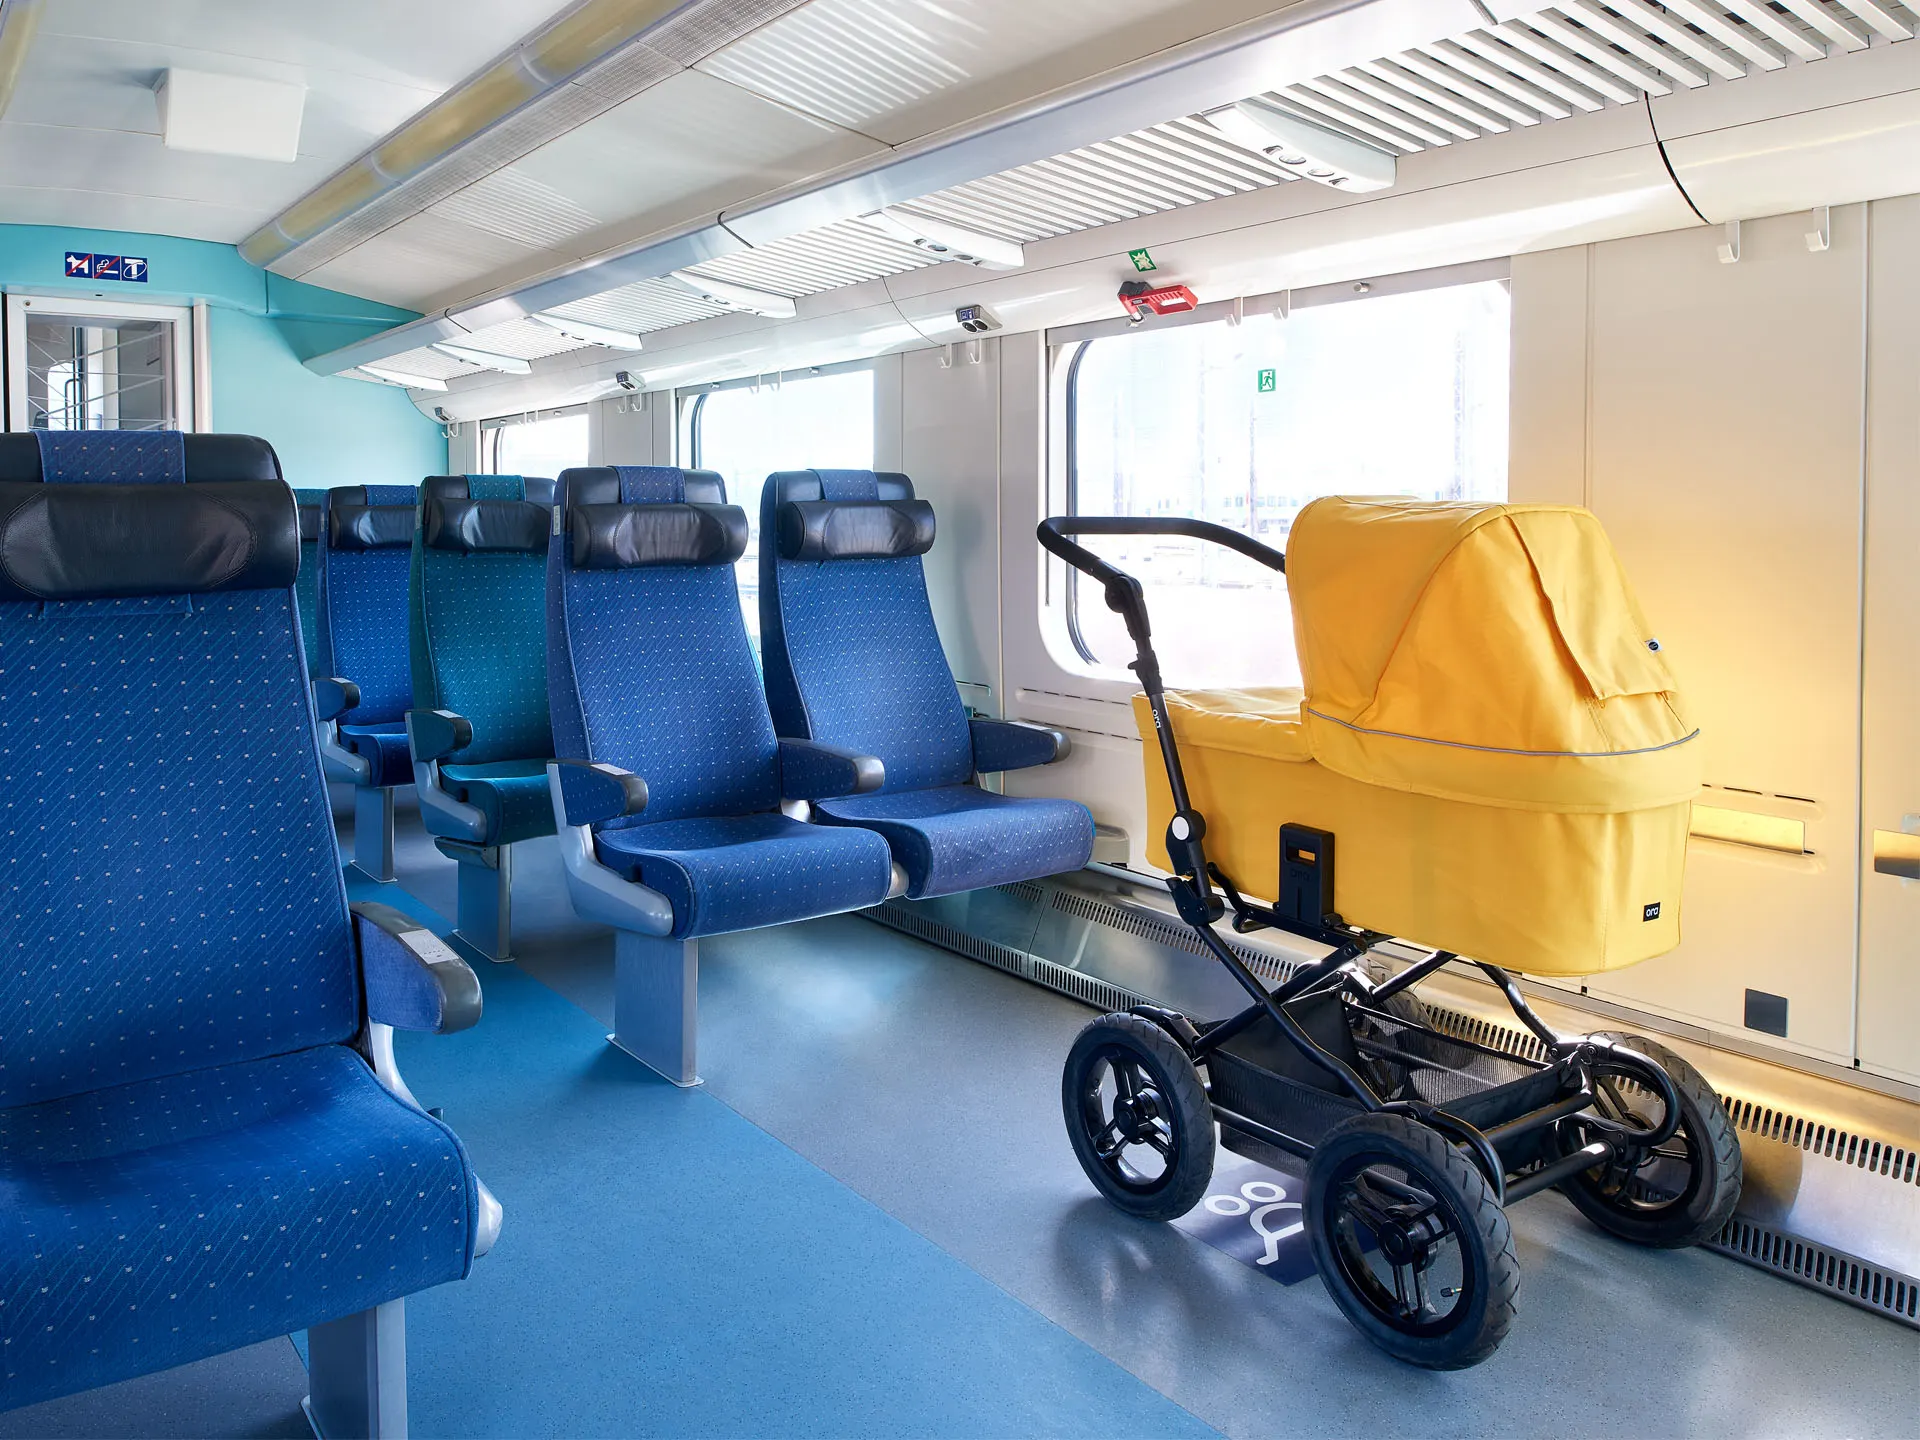 A pram in the designated space in a train’s service car.